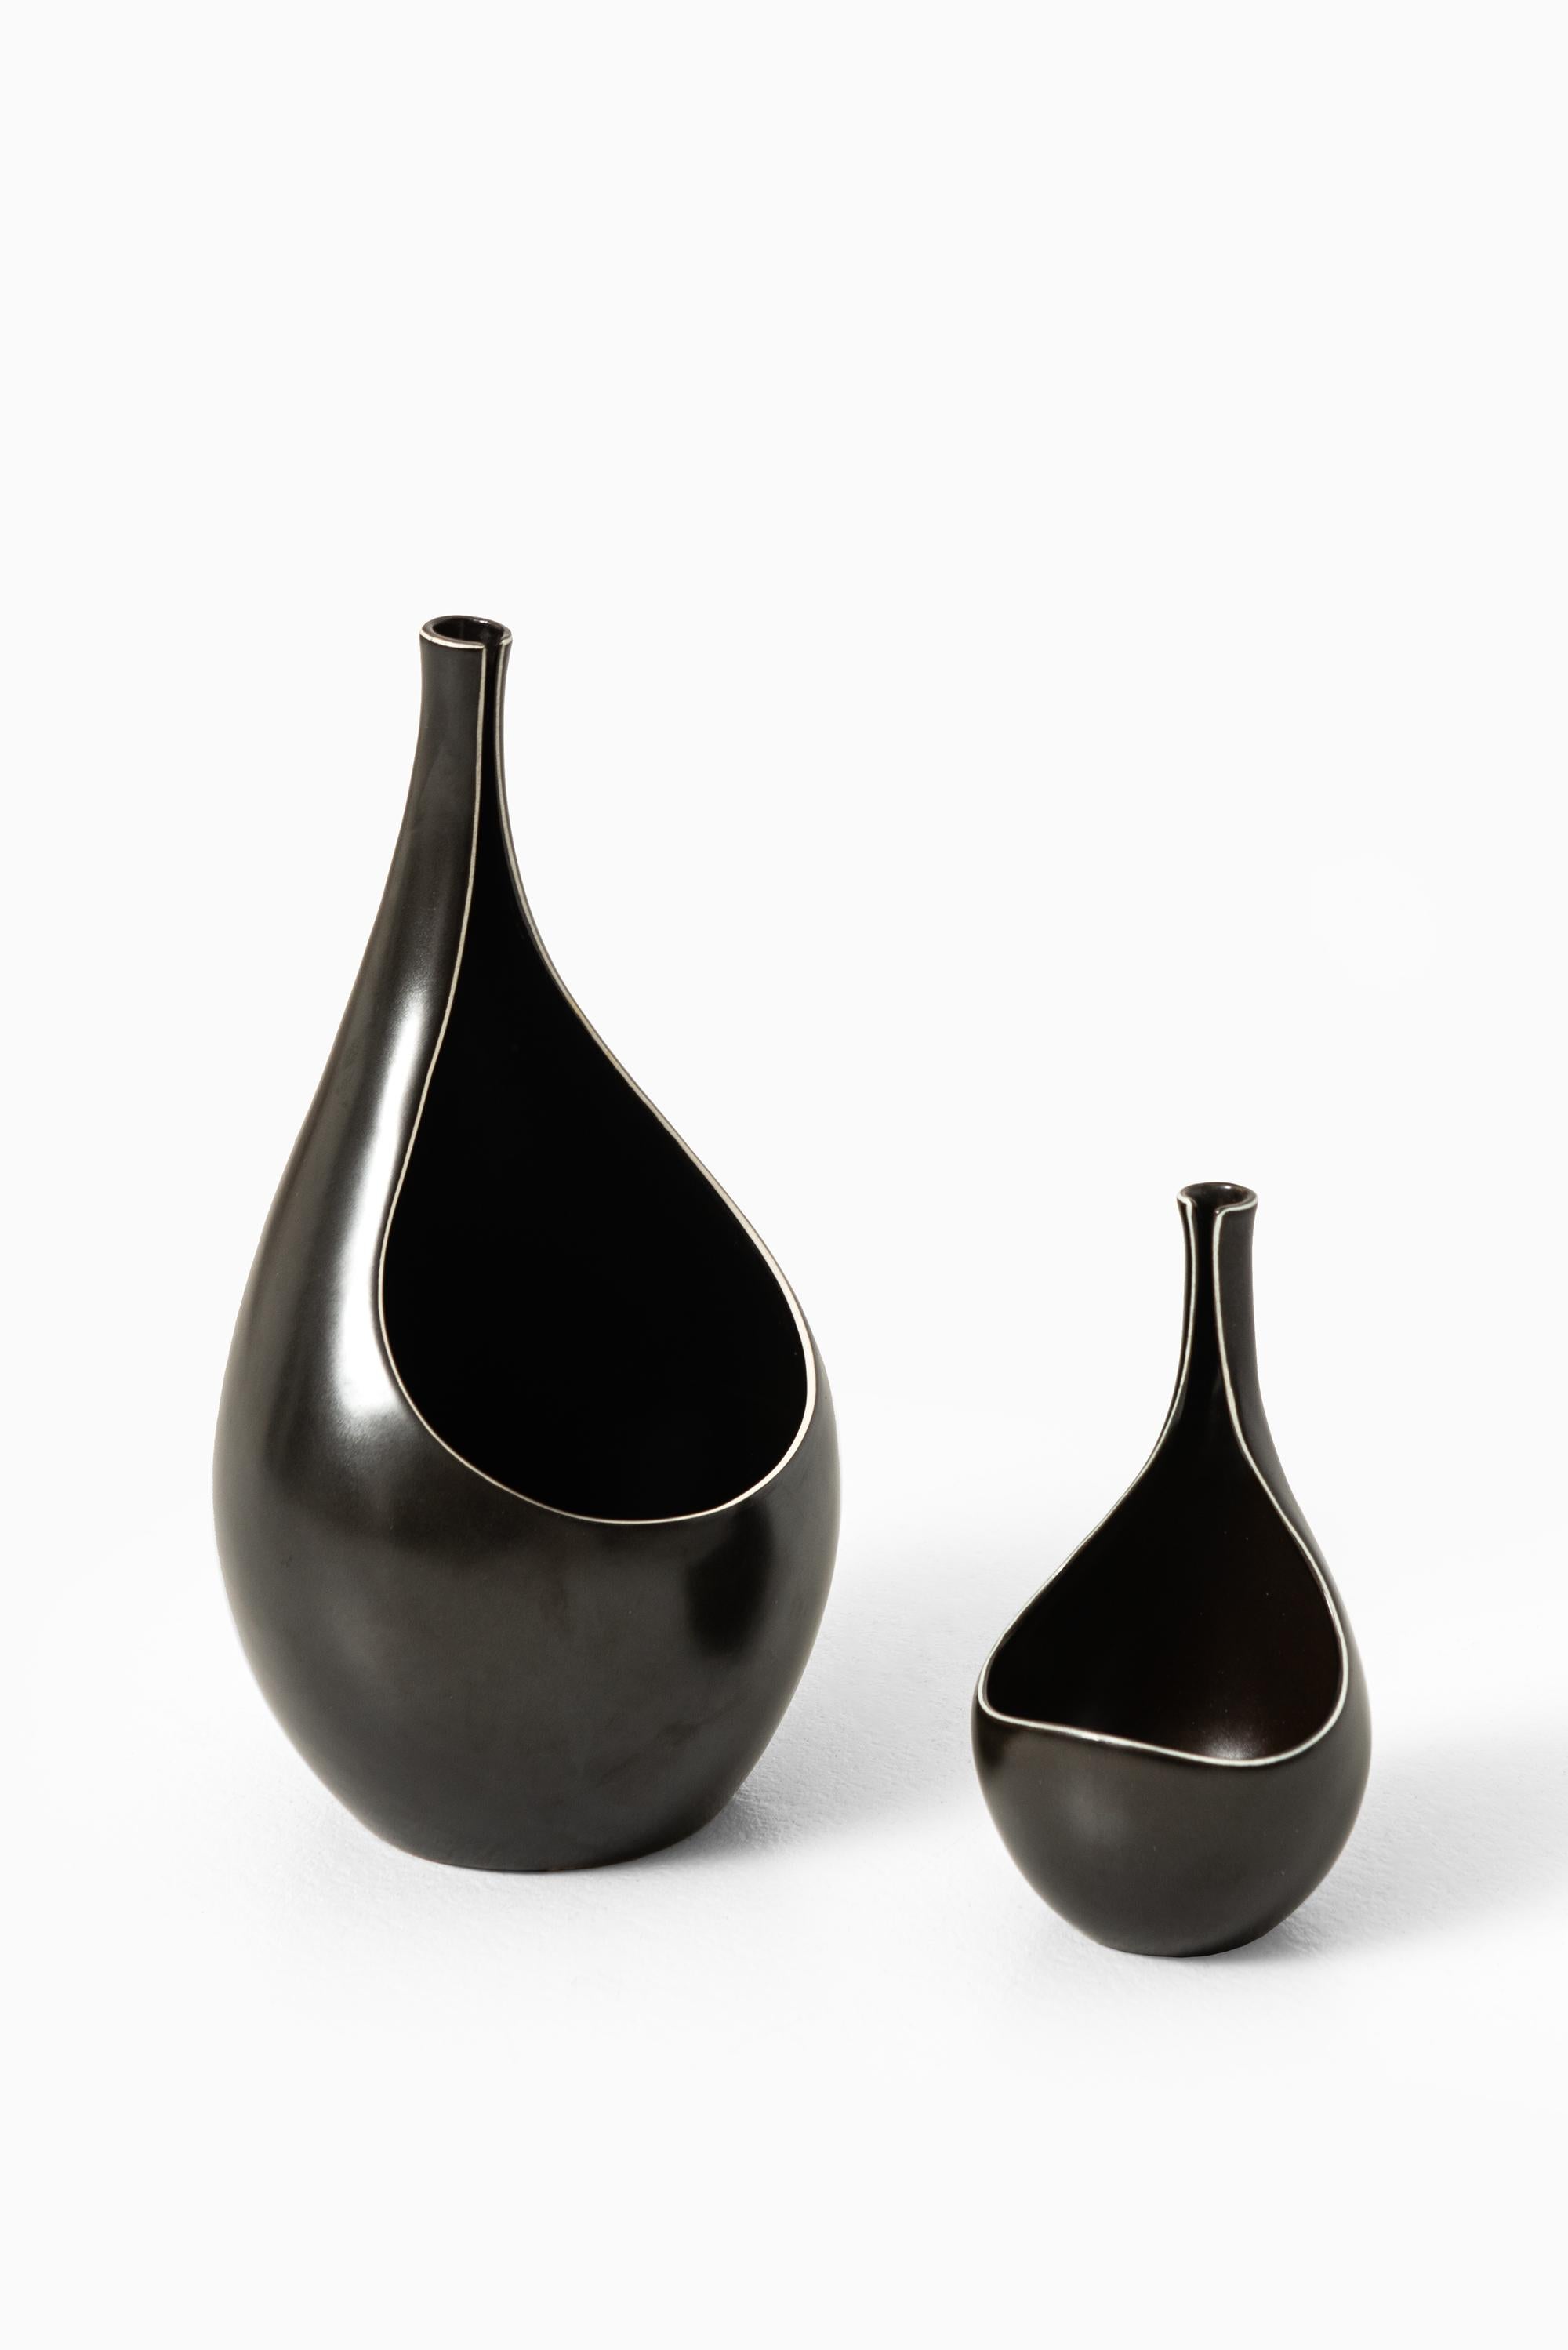 Ceramic vase model Pungo designed by Stig Lindberg. Produced by Gustavsberg in Sweden.